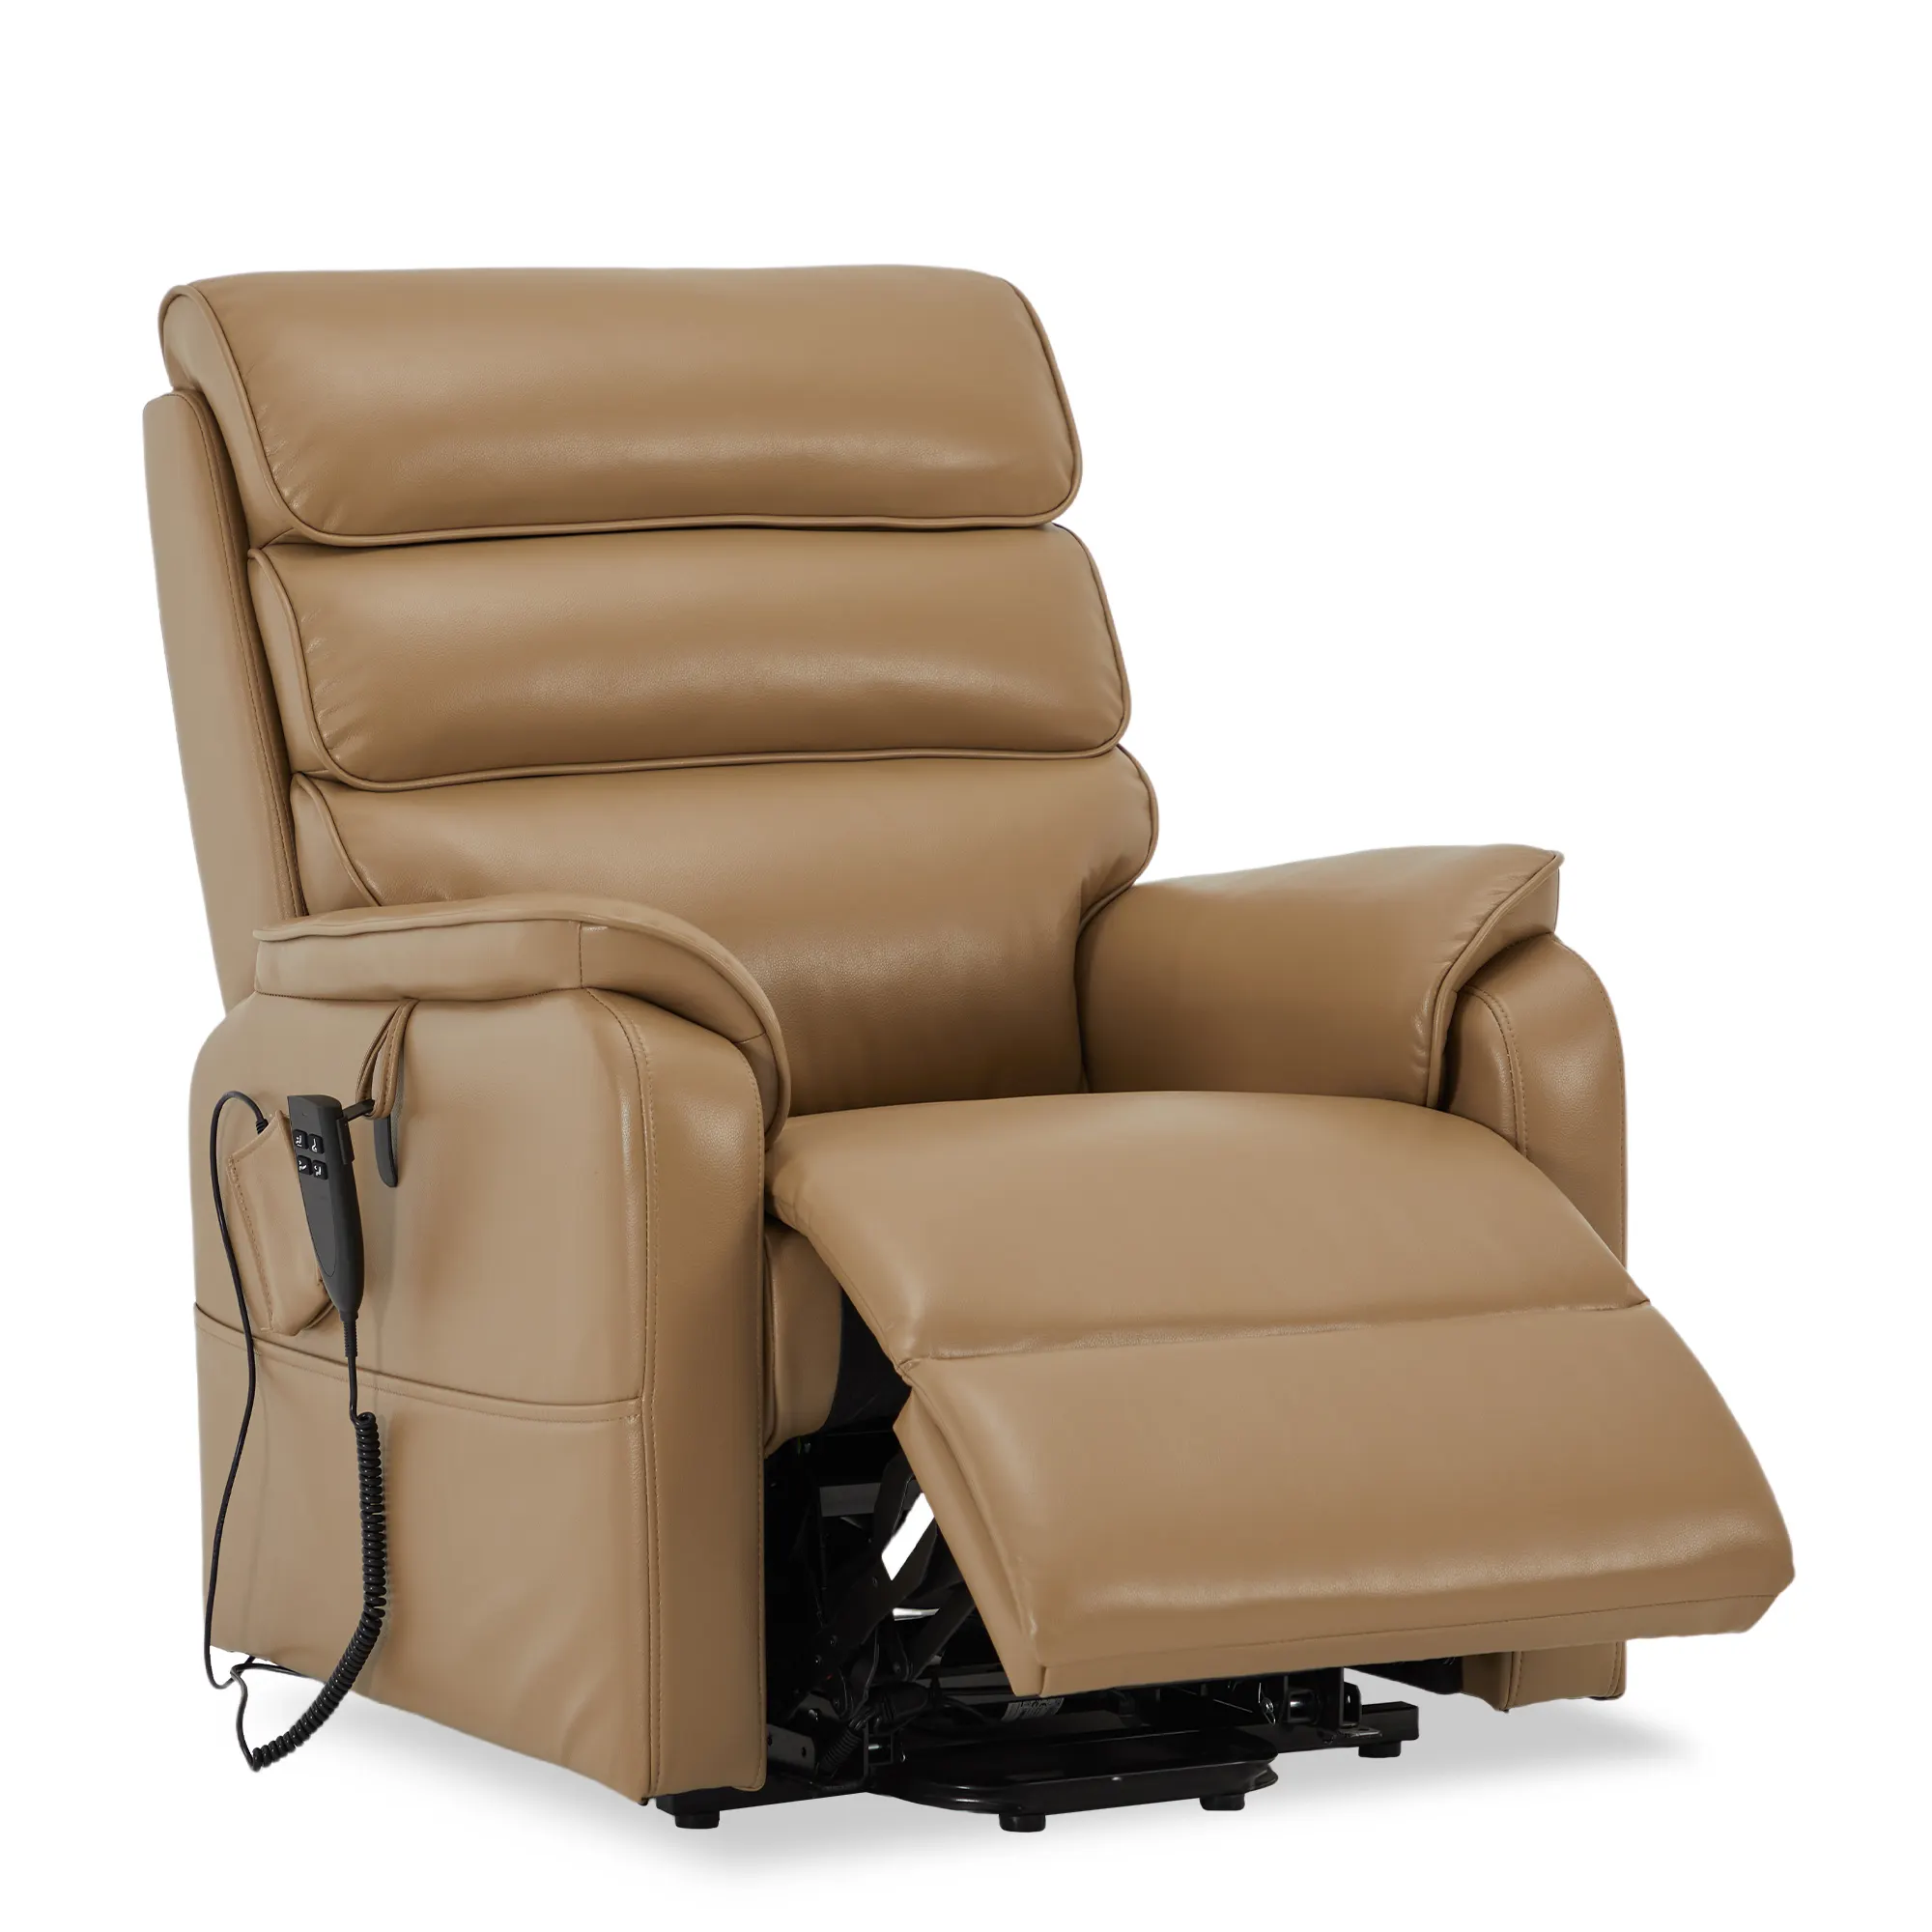 CJSmart kursi boncengan pengangkat Motor ganda, kursi malas datar posisi tak terbatas dengan pijat panas untuk orang tua